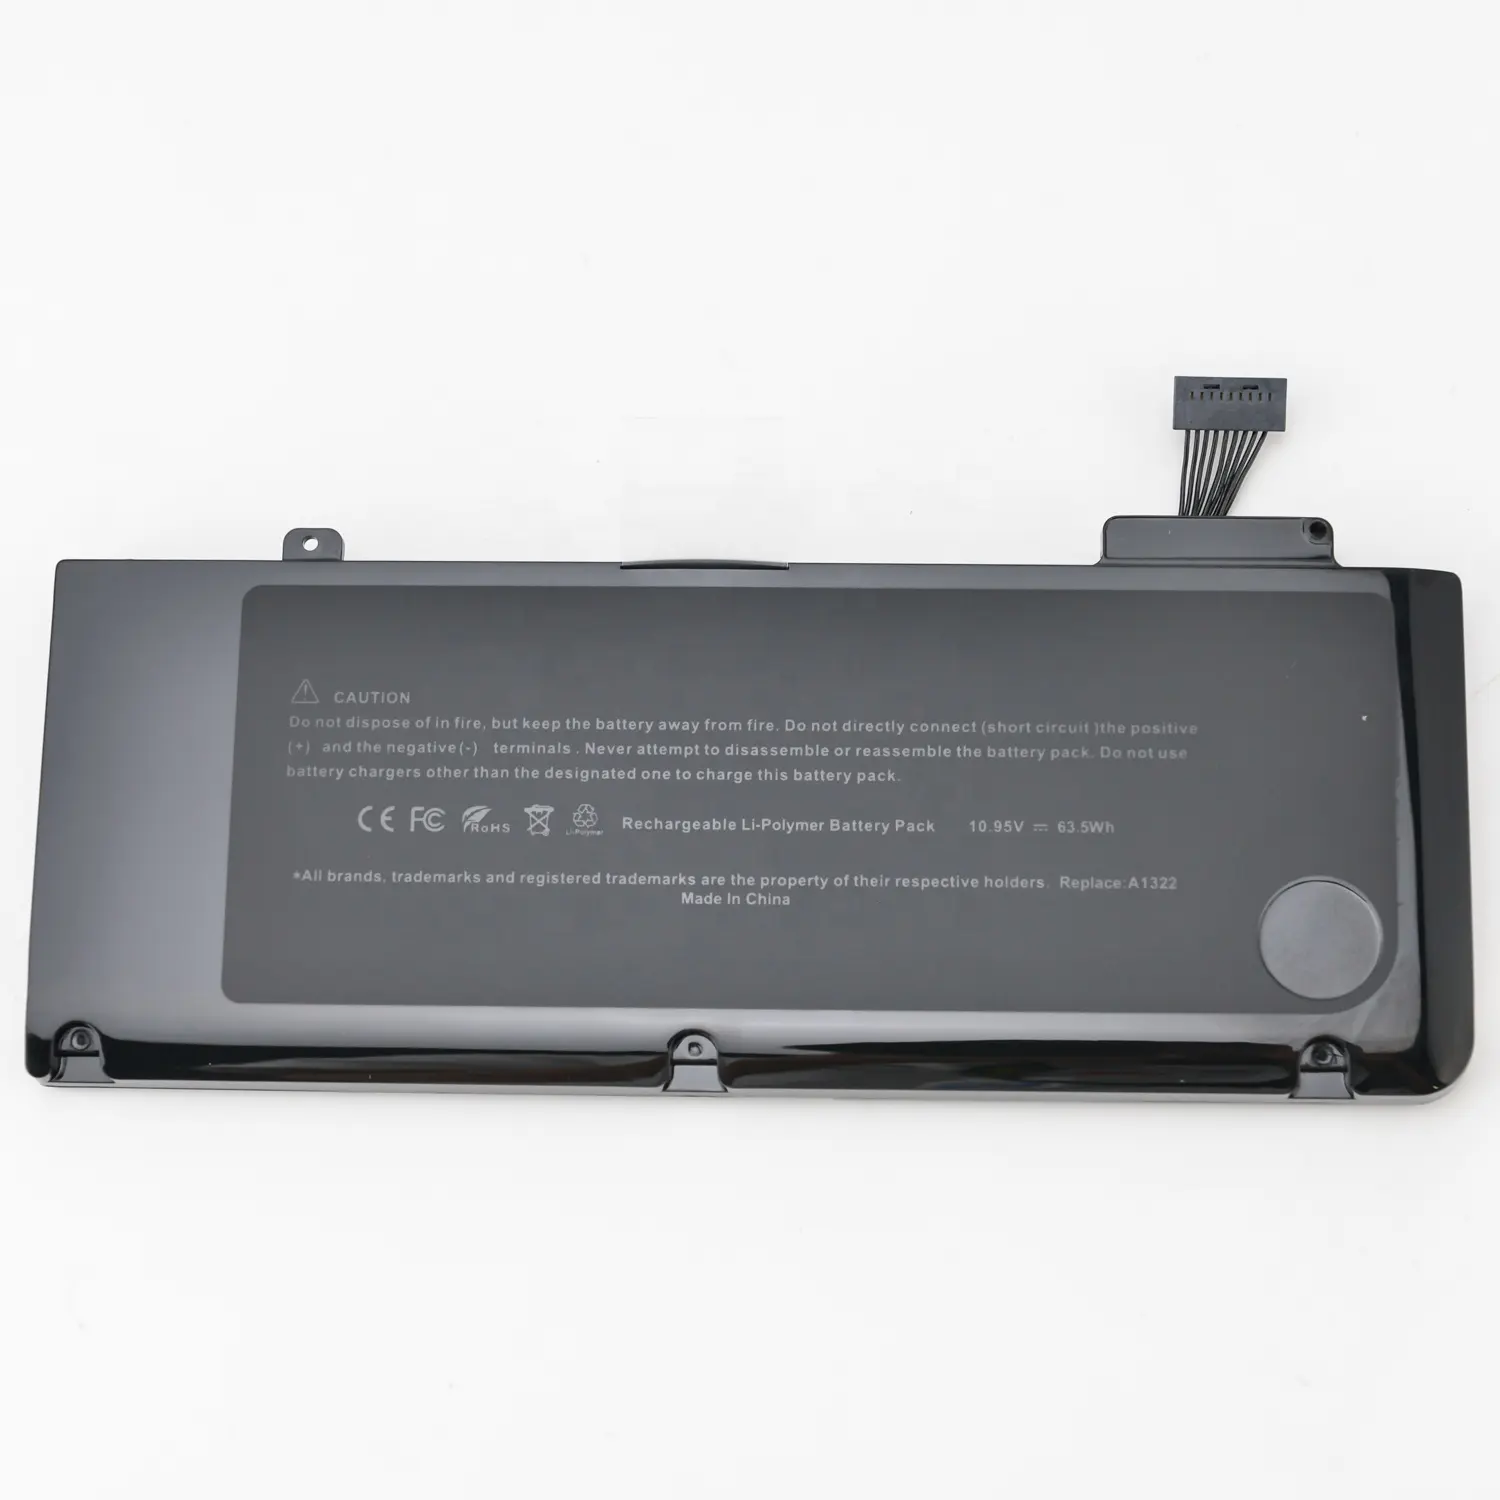 Batterie de remplacement pour macbook pro 13 pouces A1278 10.95, 6000 V 2009 mAh, flambant neuf, livraison gratuite